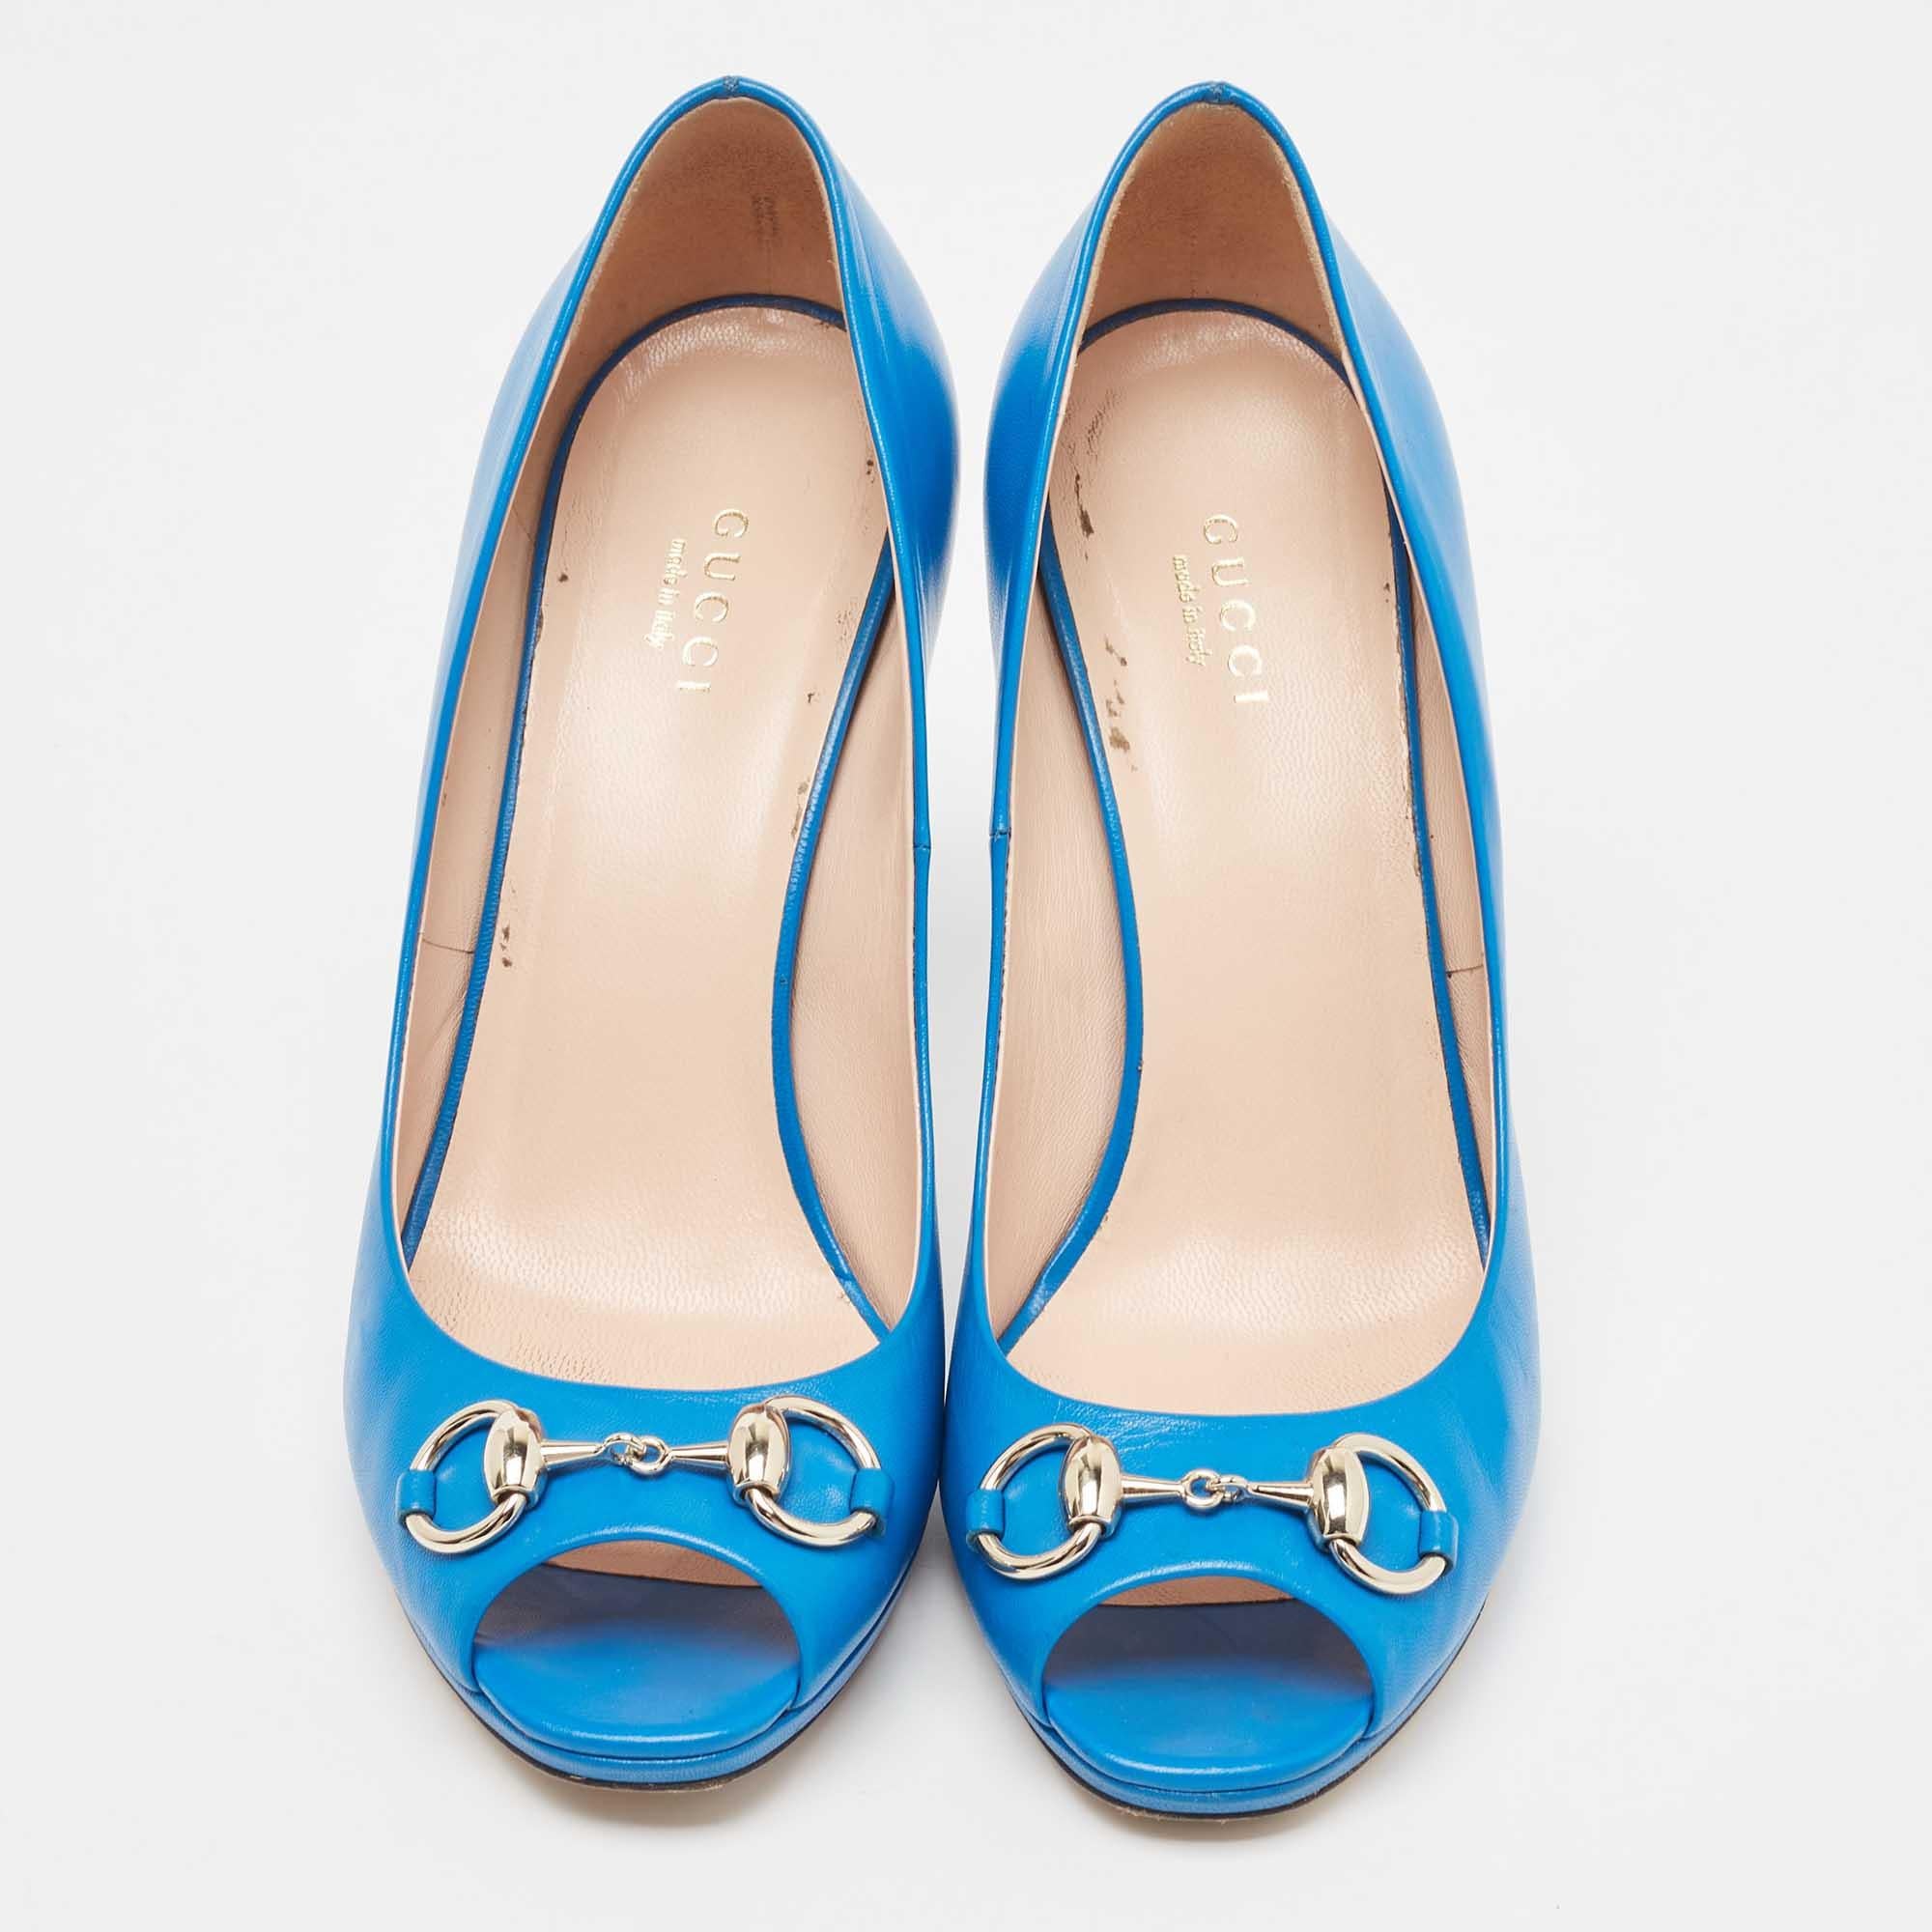 La tradition d'excellence de la maison de couture, associée à une sensibilité au design moderne, fait de ces escarpins bleus Gucci un choix fabuleux. Ils vous aideront à obtenir un look chic en toute simplicité.

